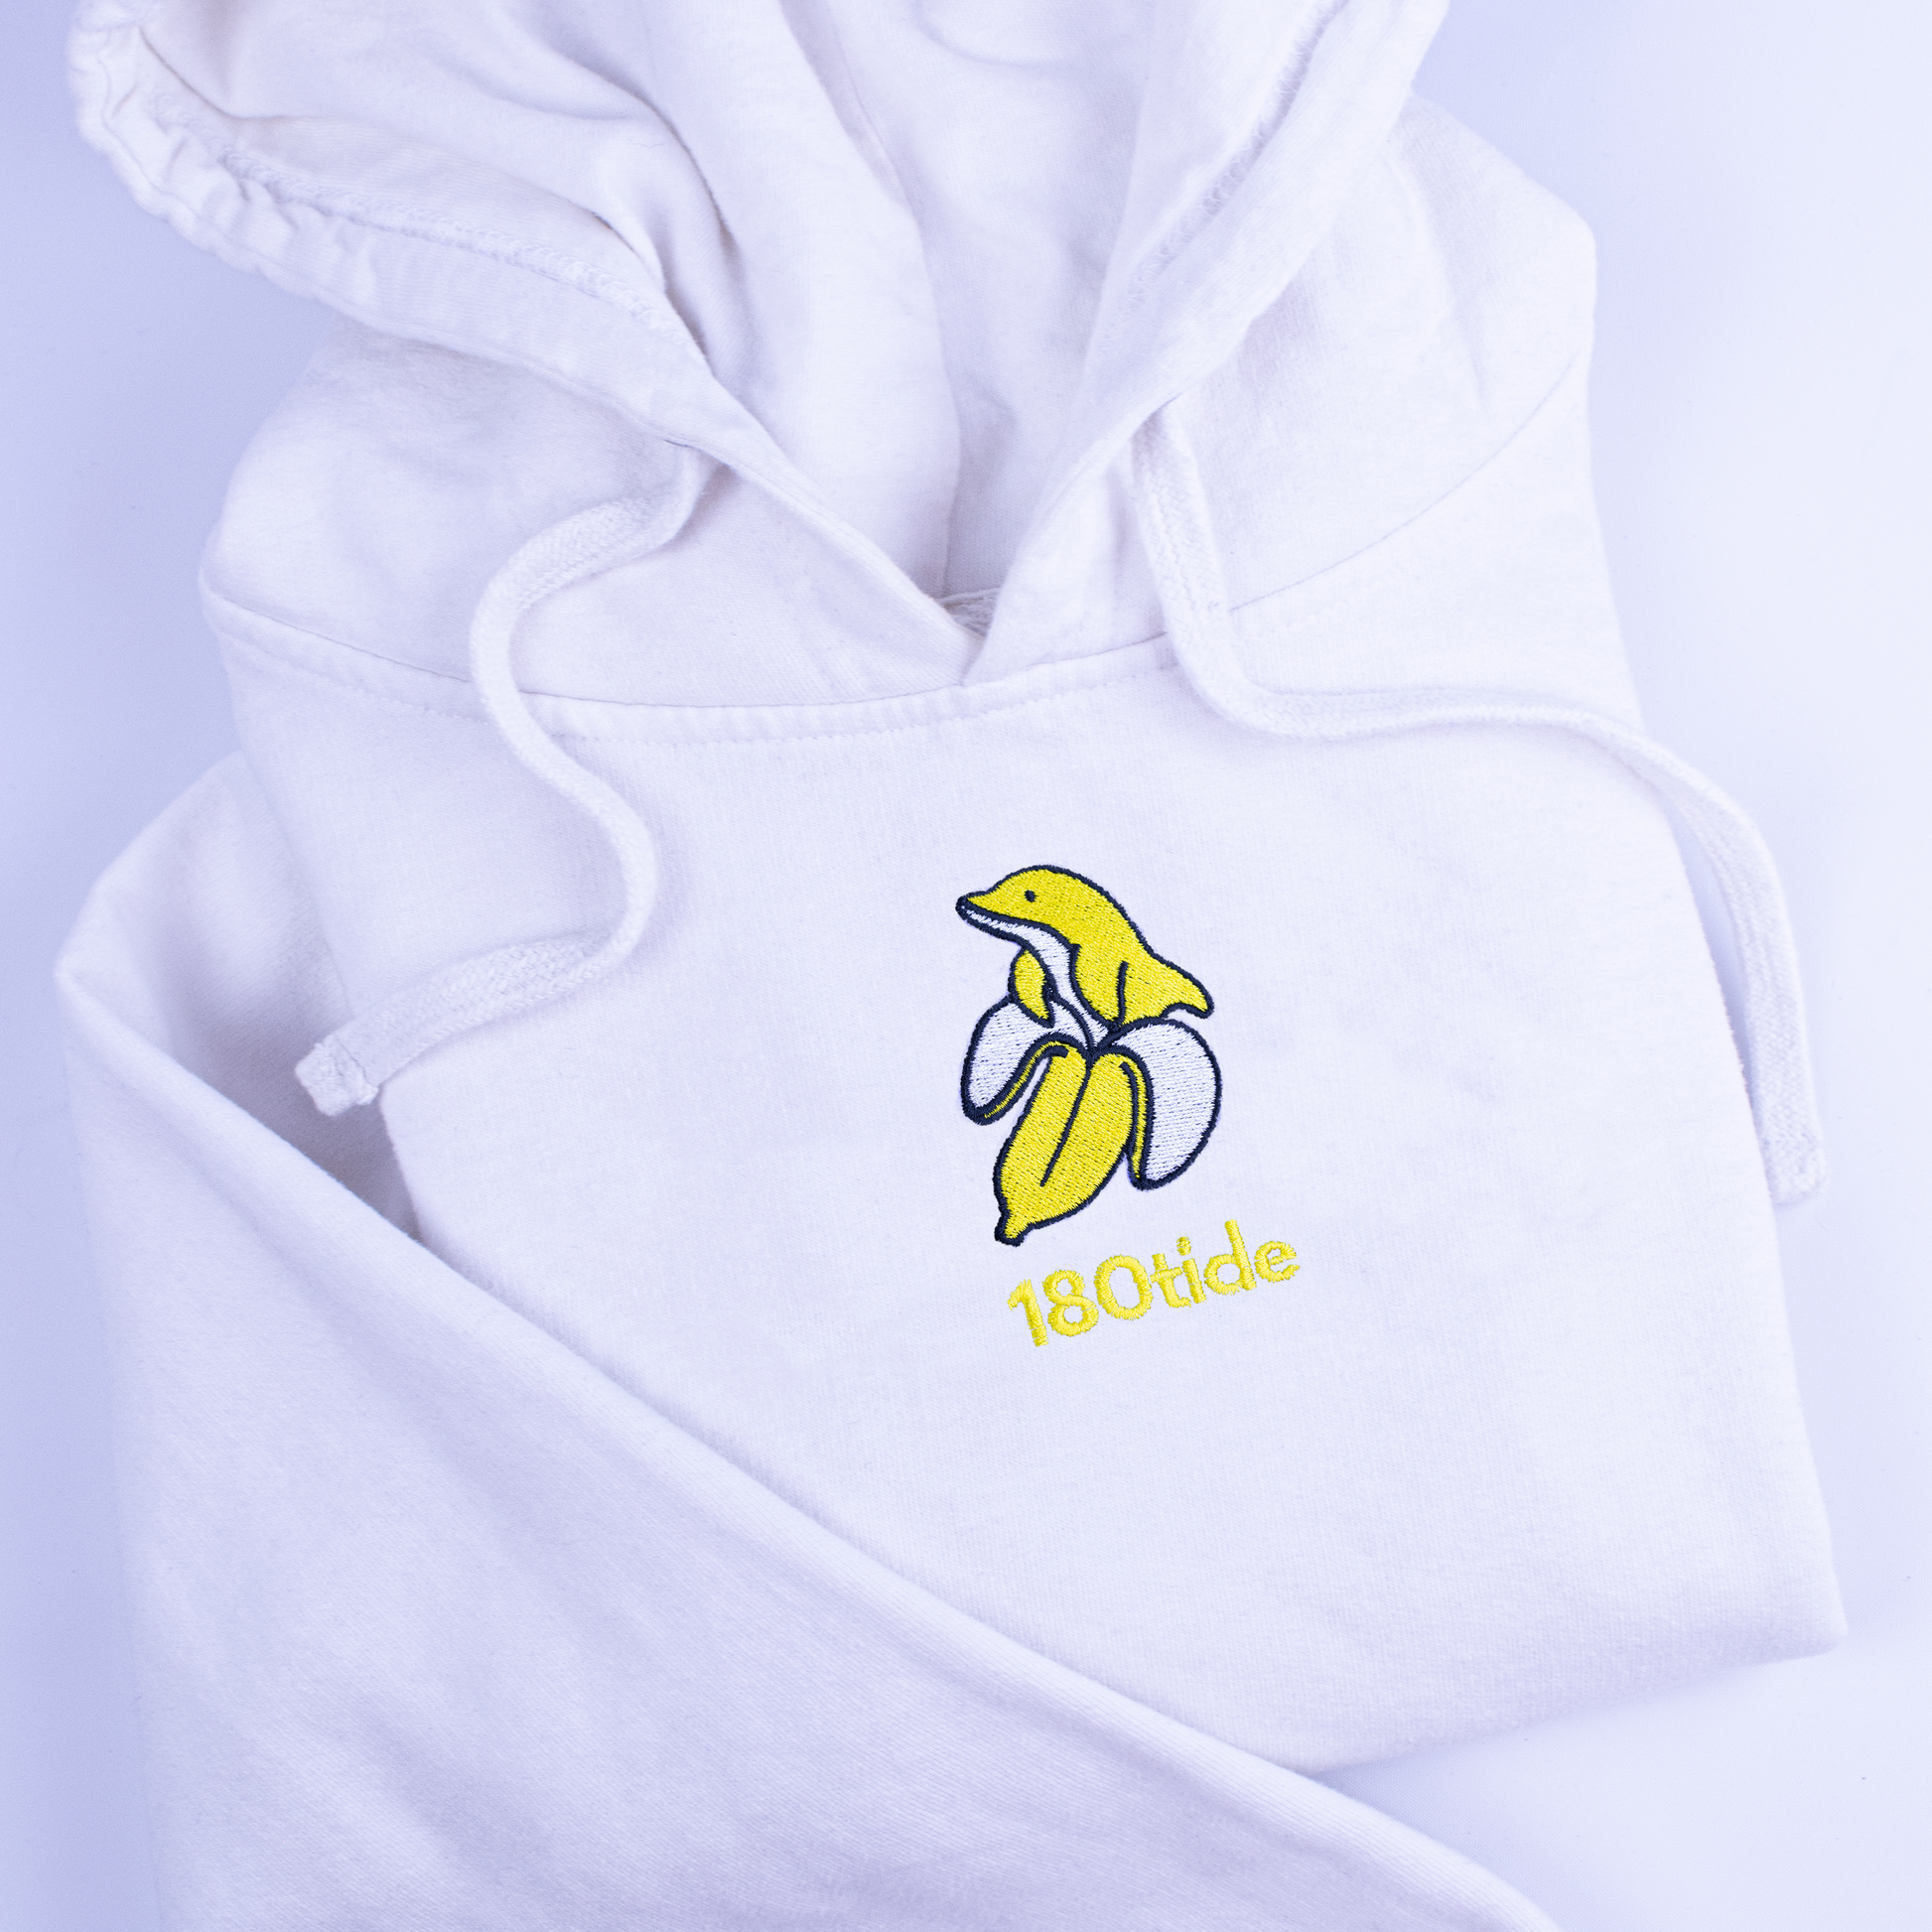 BanDan the Banana Dolphin Embroidery. Banana Dolphin Clothing. 